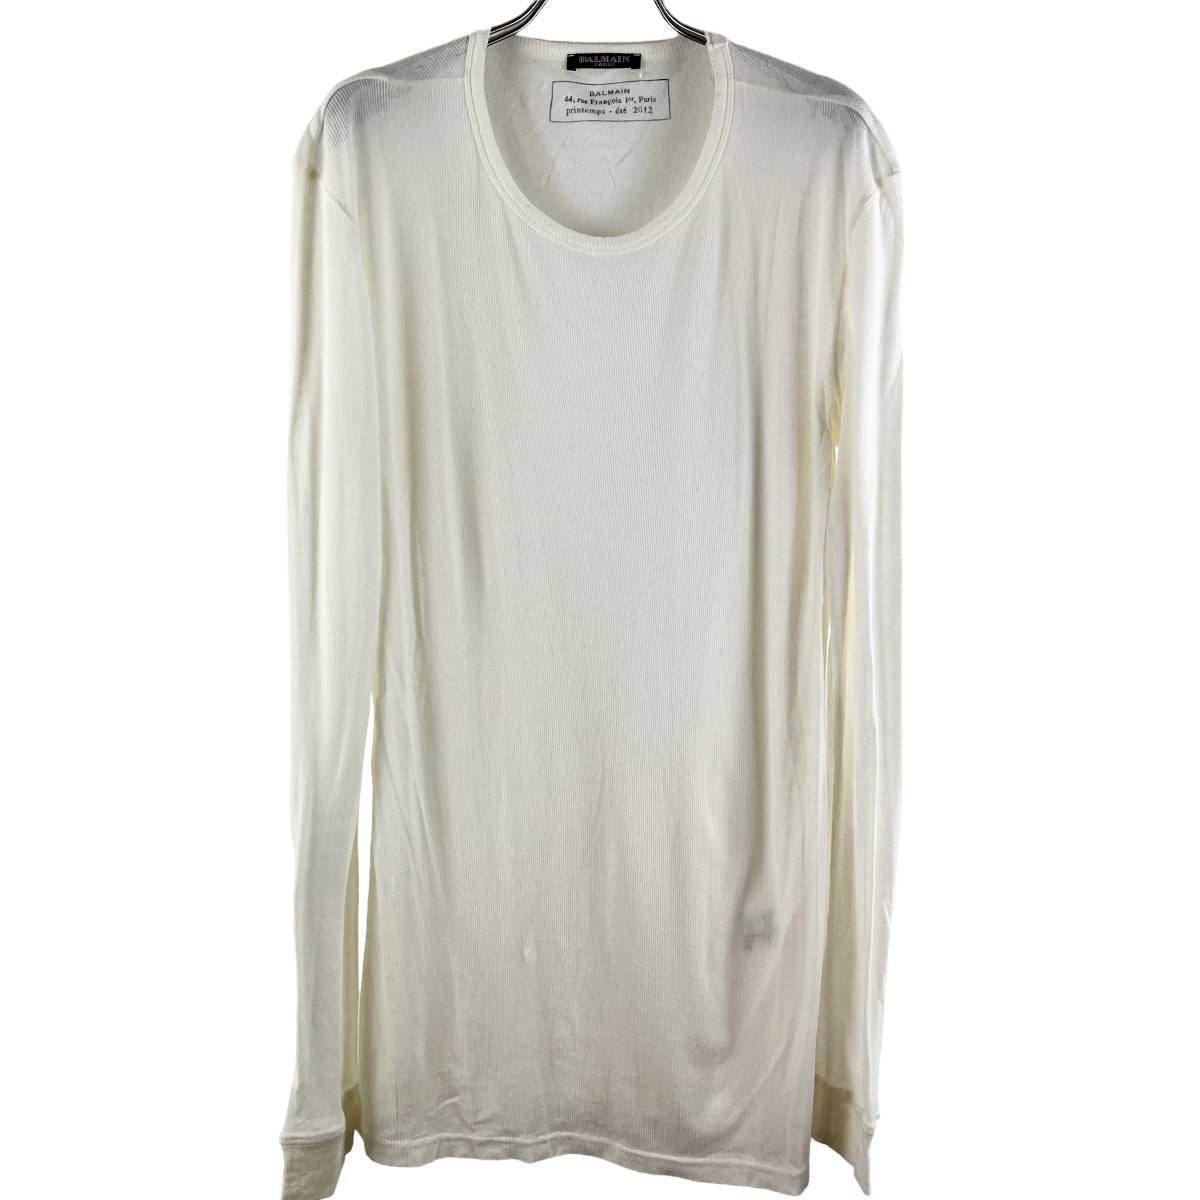 BALMAIN(バルマン) Longsleeve Paris Printemps 2012 T Shirt (beige)